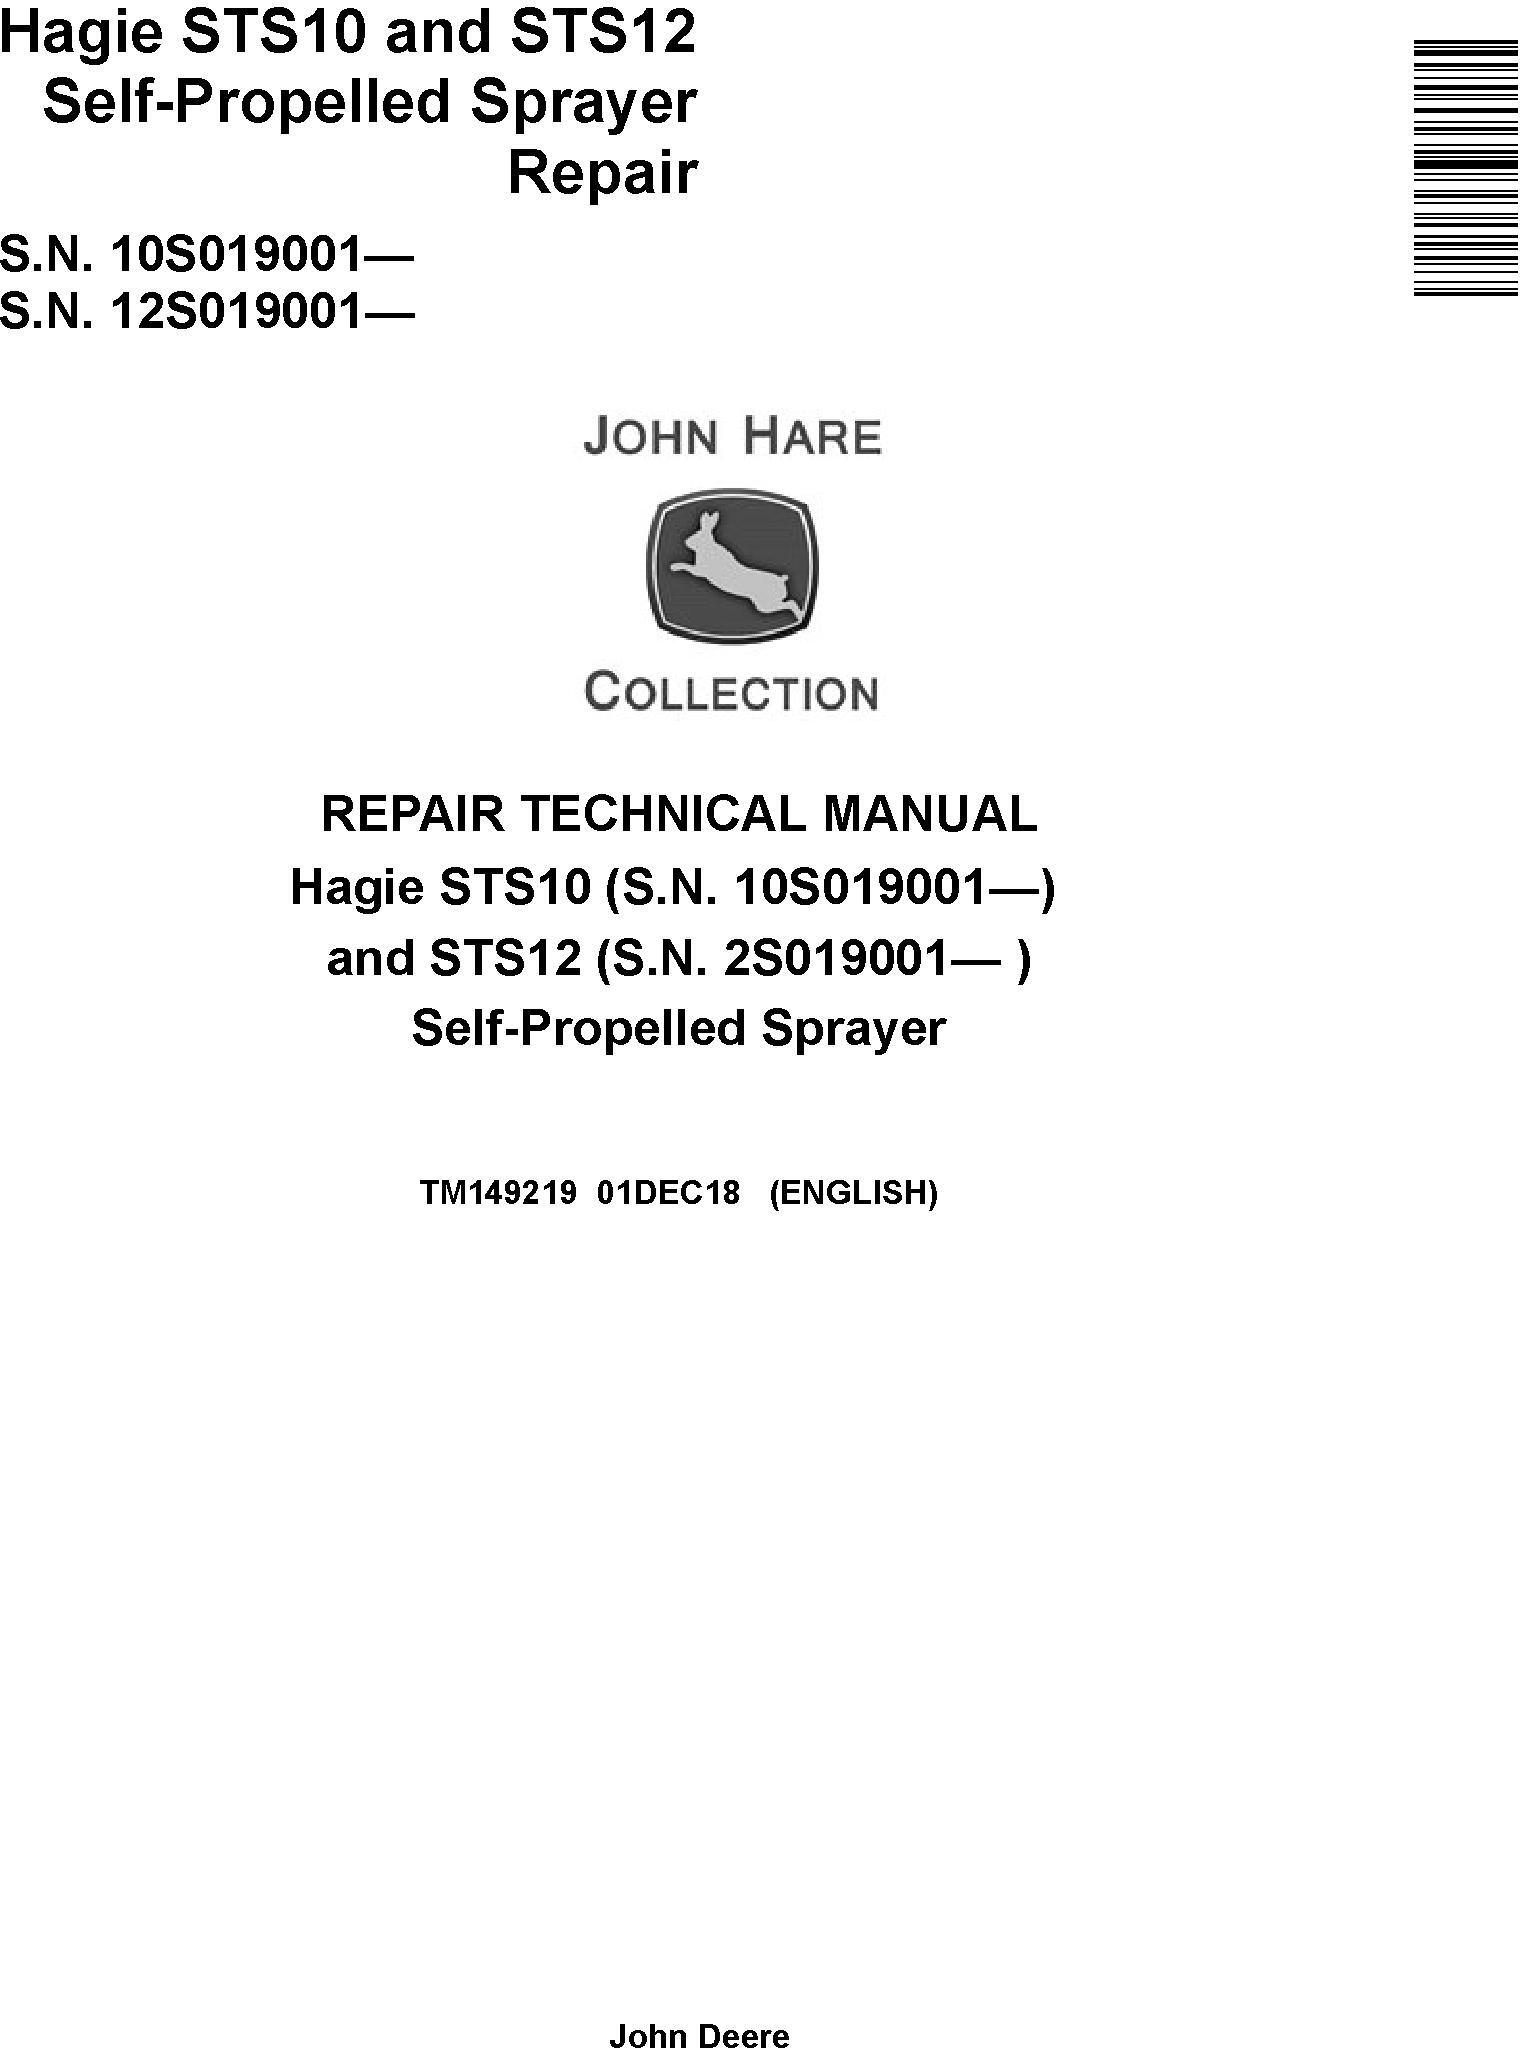 John Deere Hagie STS10 STS12 Self-Propelled Sprayer Repair Technical Manual TM149219